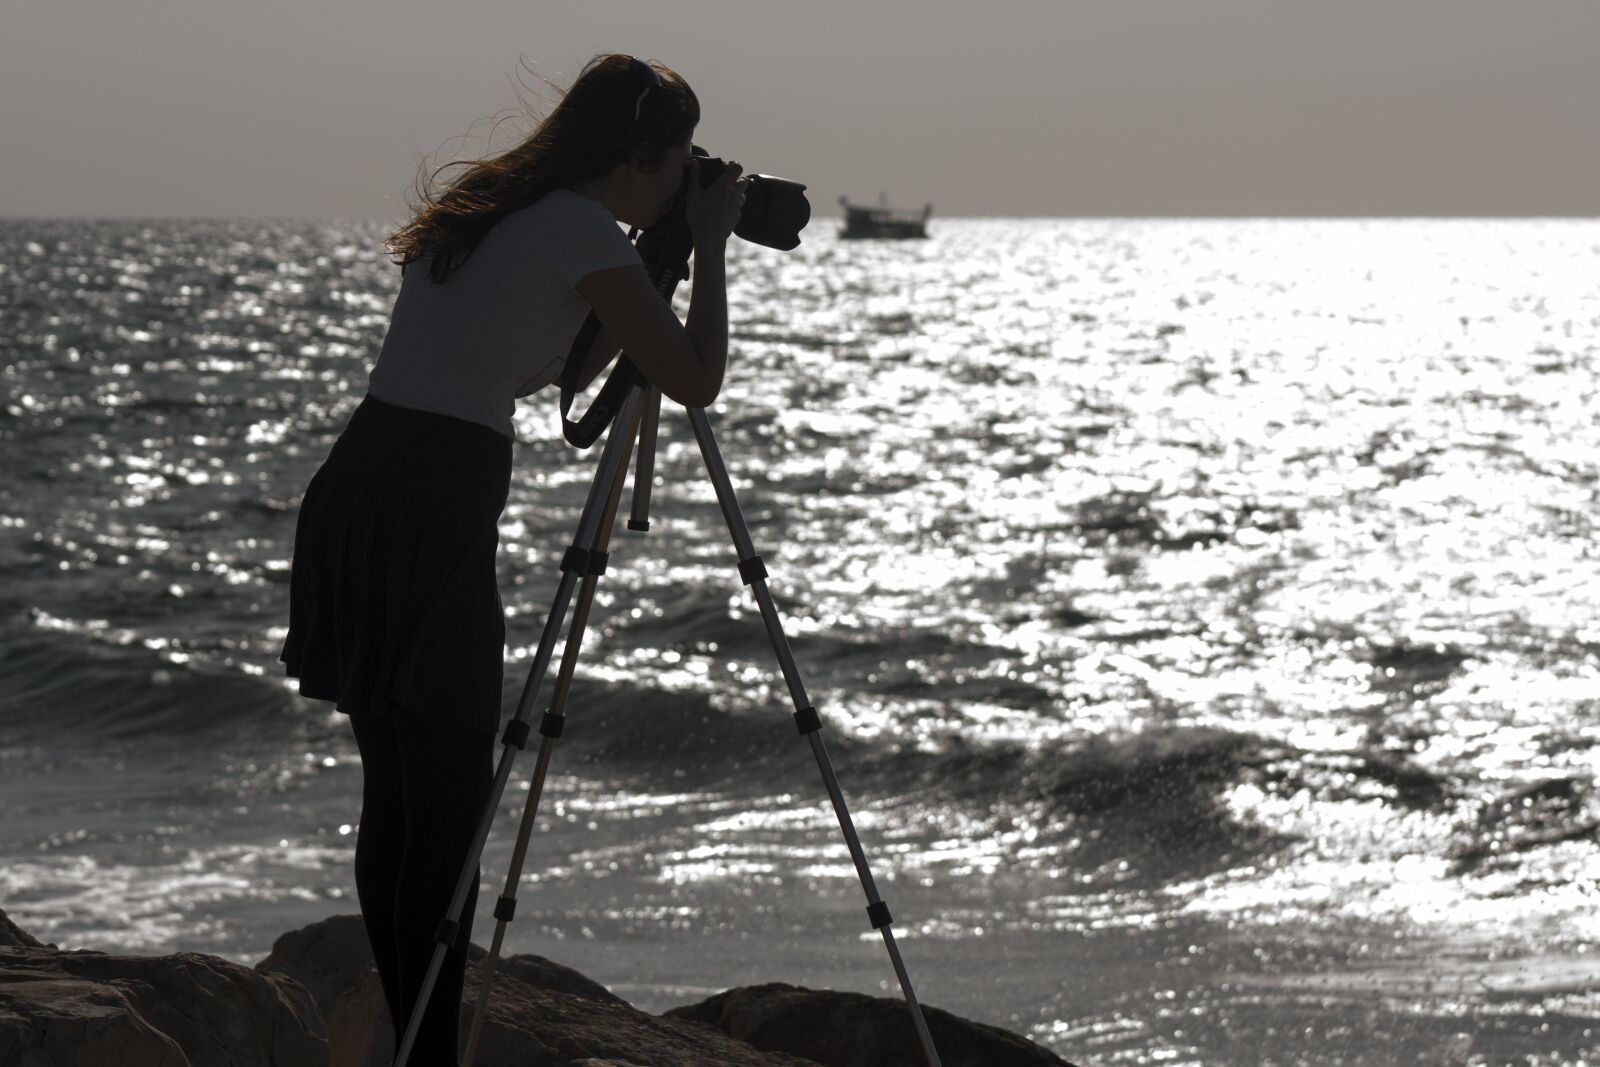 Canon EOS 450D (EOS Rebel XSi / EOS Kiss X2) + Canon EF 75-300mm f/4-5.6 sample photo. Sea, shore, girl photography